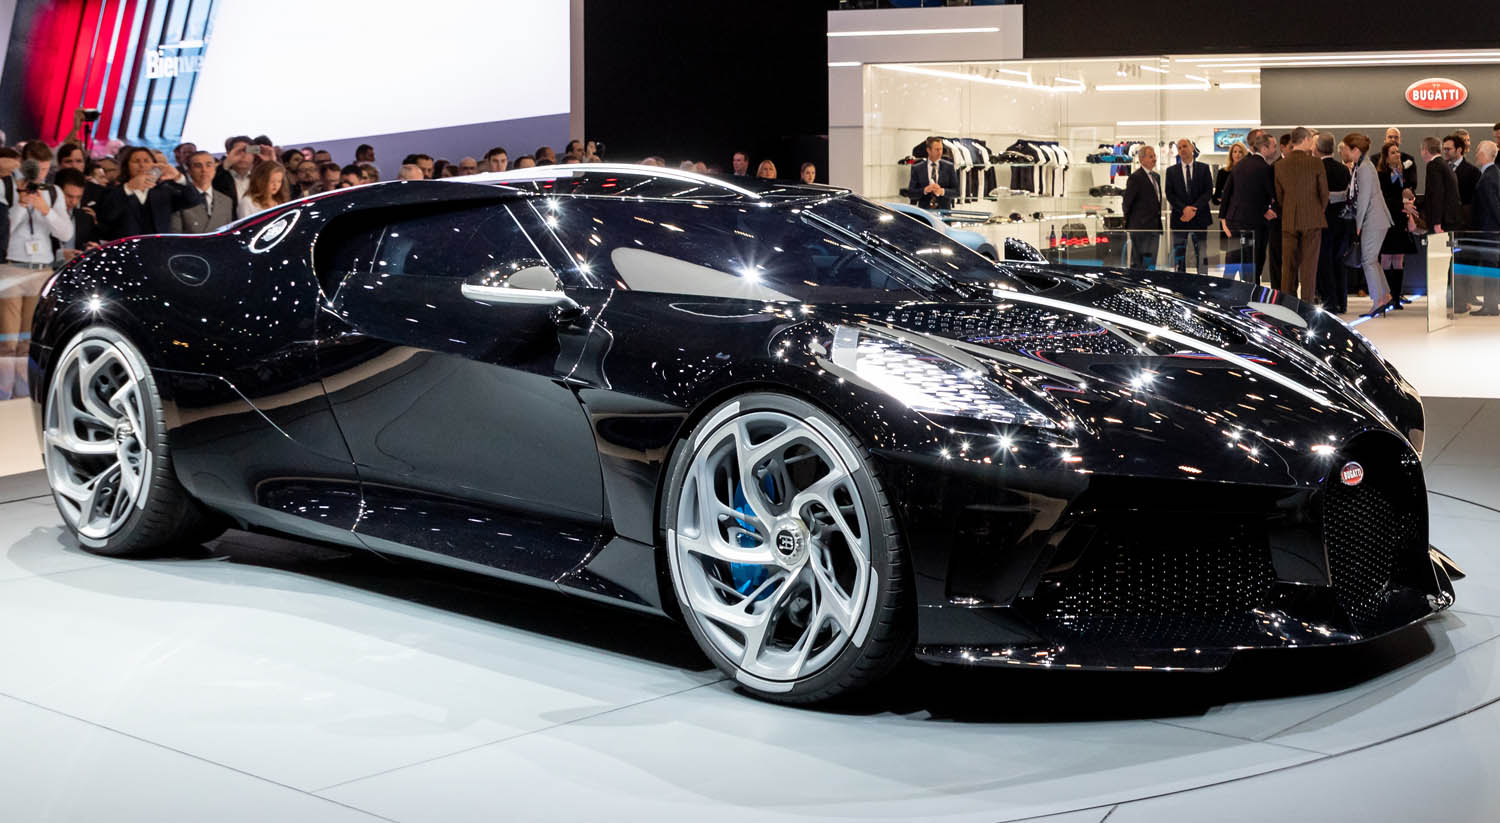 Bugatti 2021. Бугатти la voiture noire 2021. Bugatti Veyron 2021. Бугатти Ноир 2021.